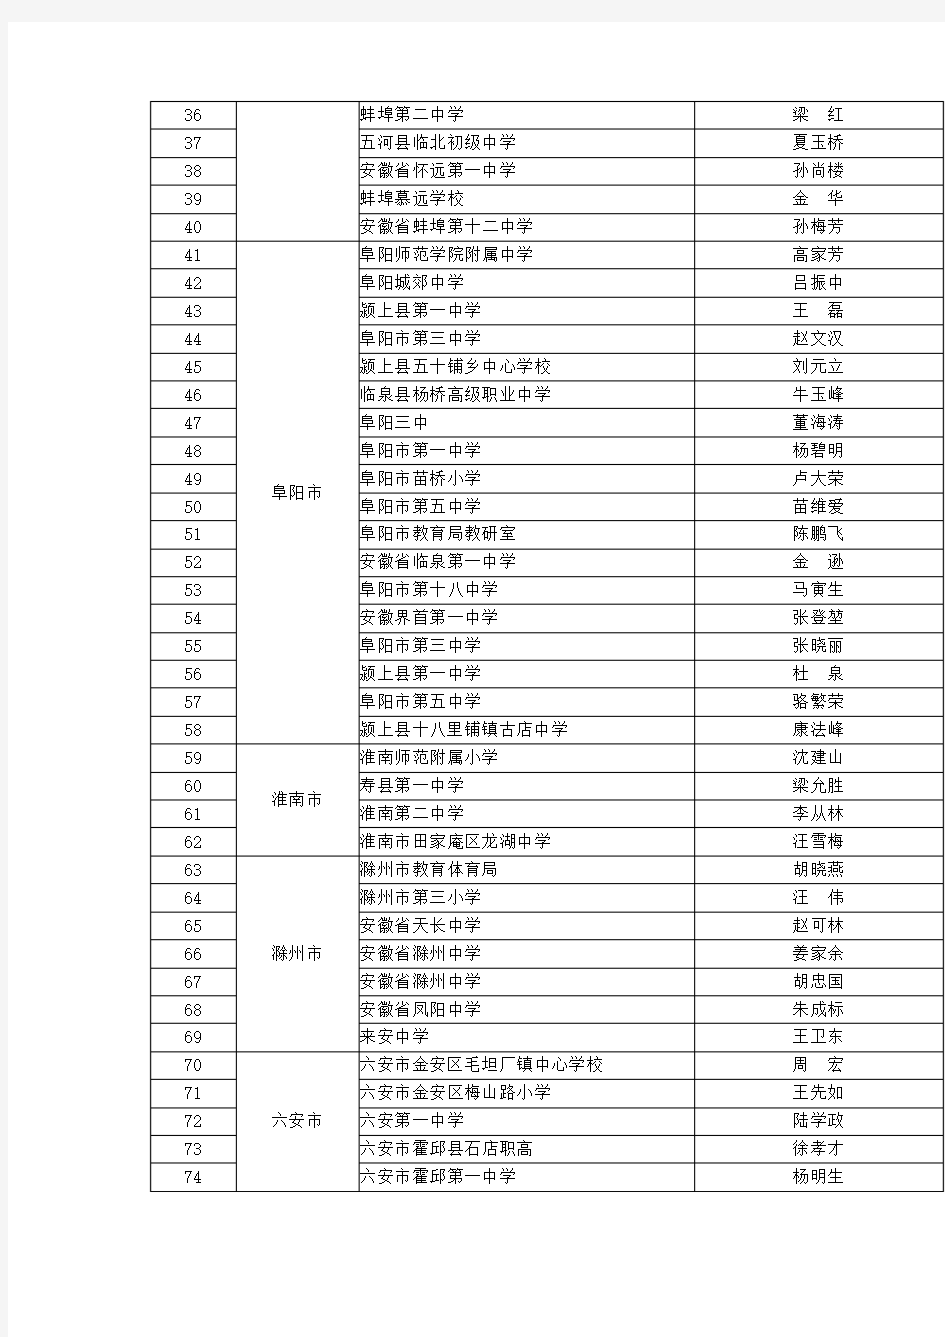 2016年安徽省中小学正高级教师职称评审通过人员名单